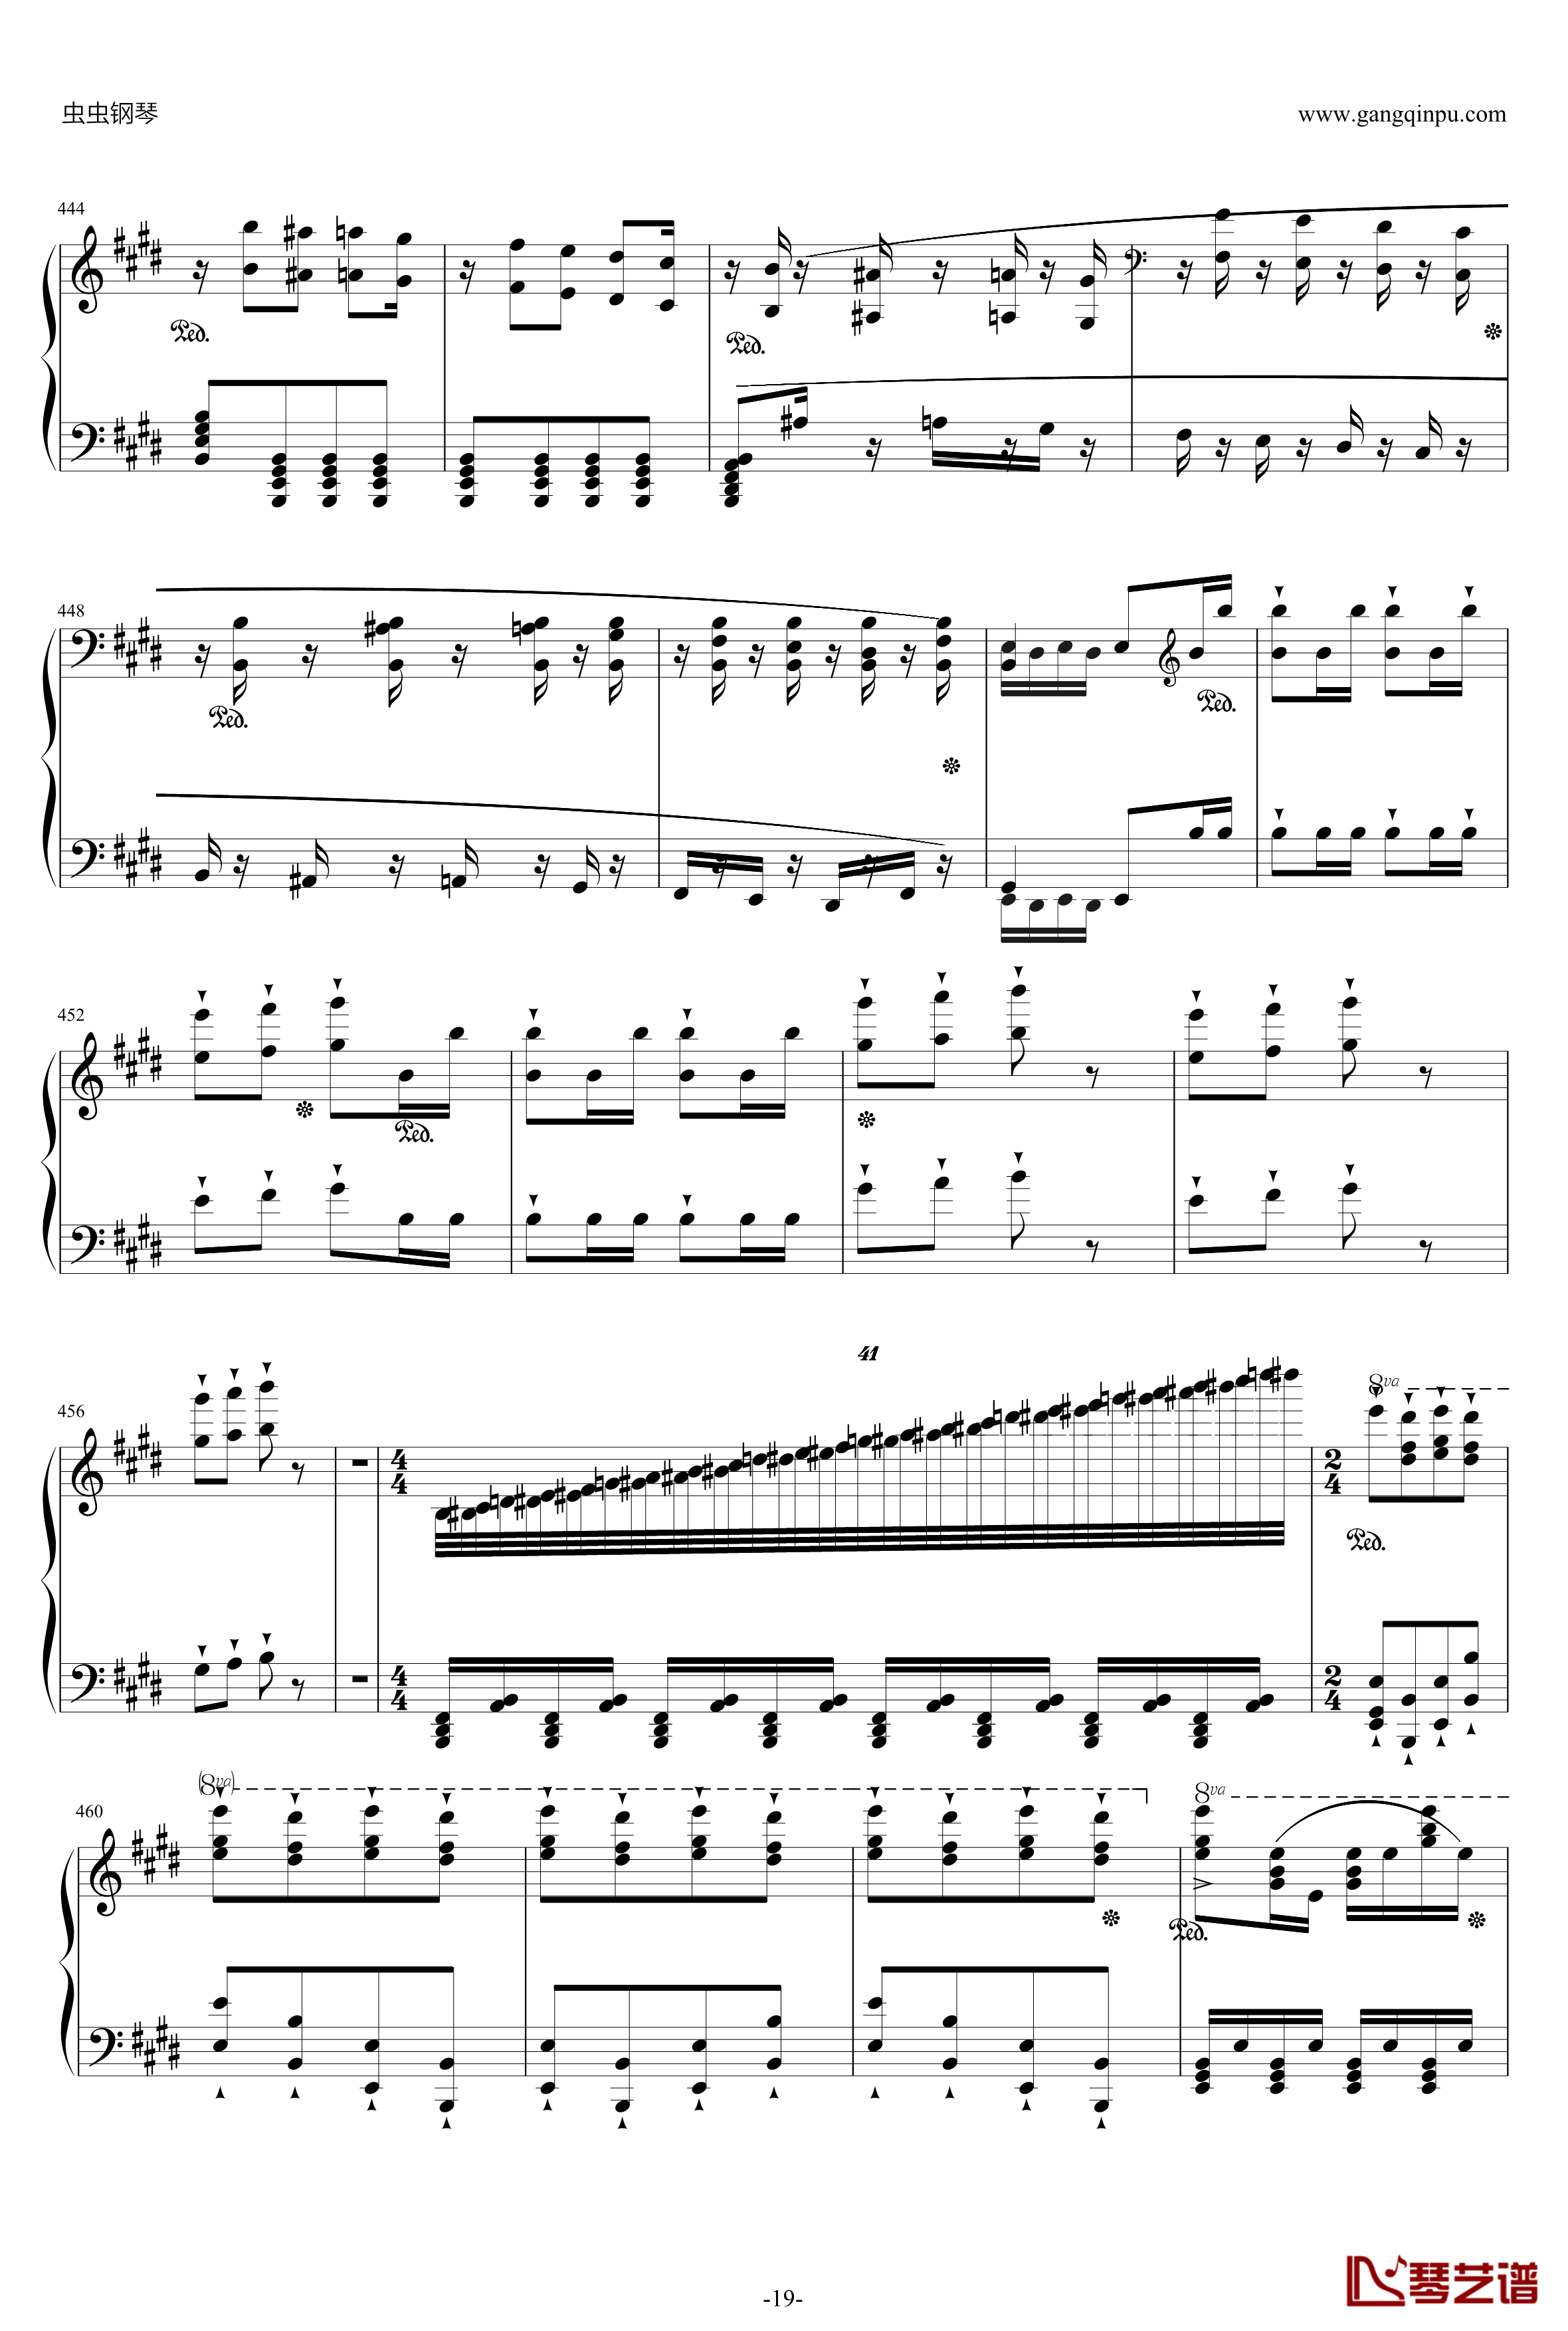 威廉·退尔序曲钢琴谱-李斯特S.55219